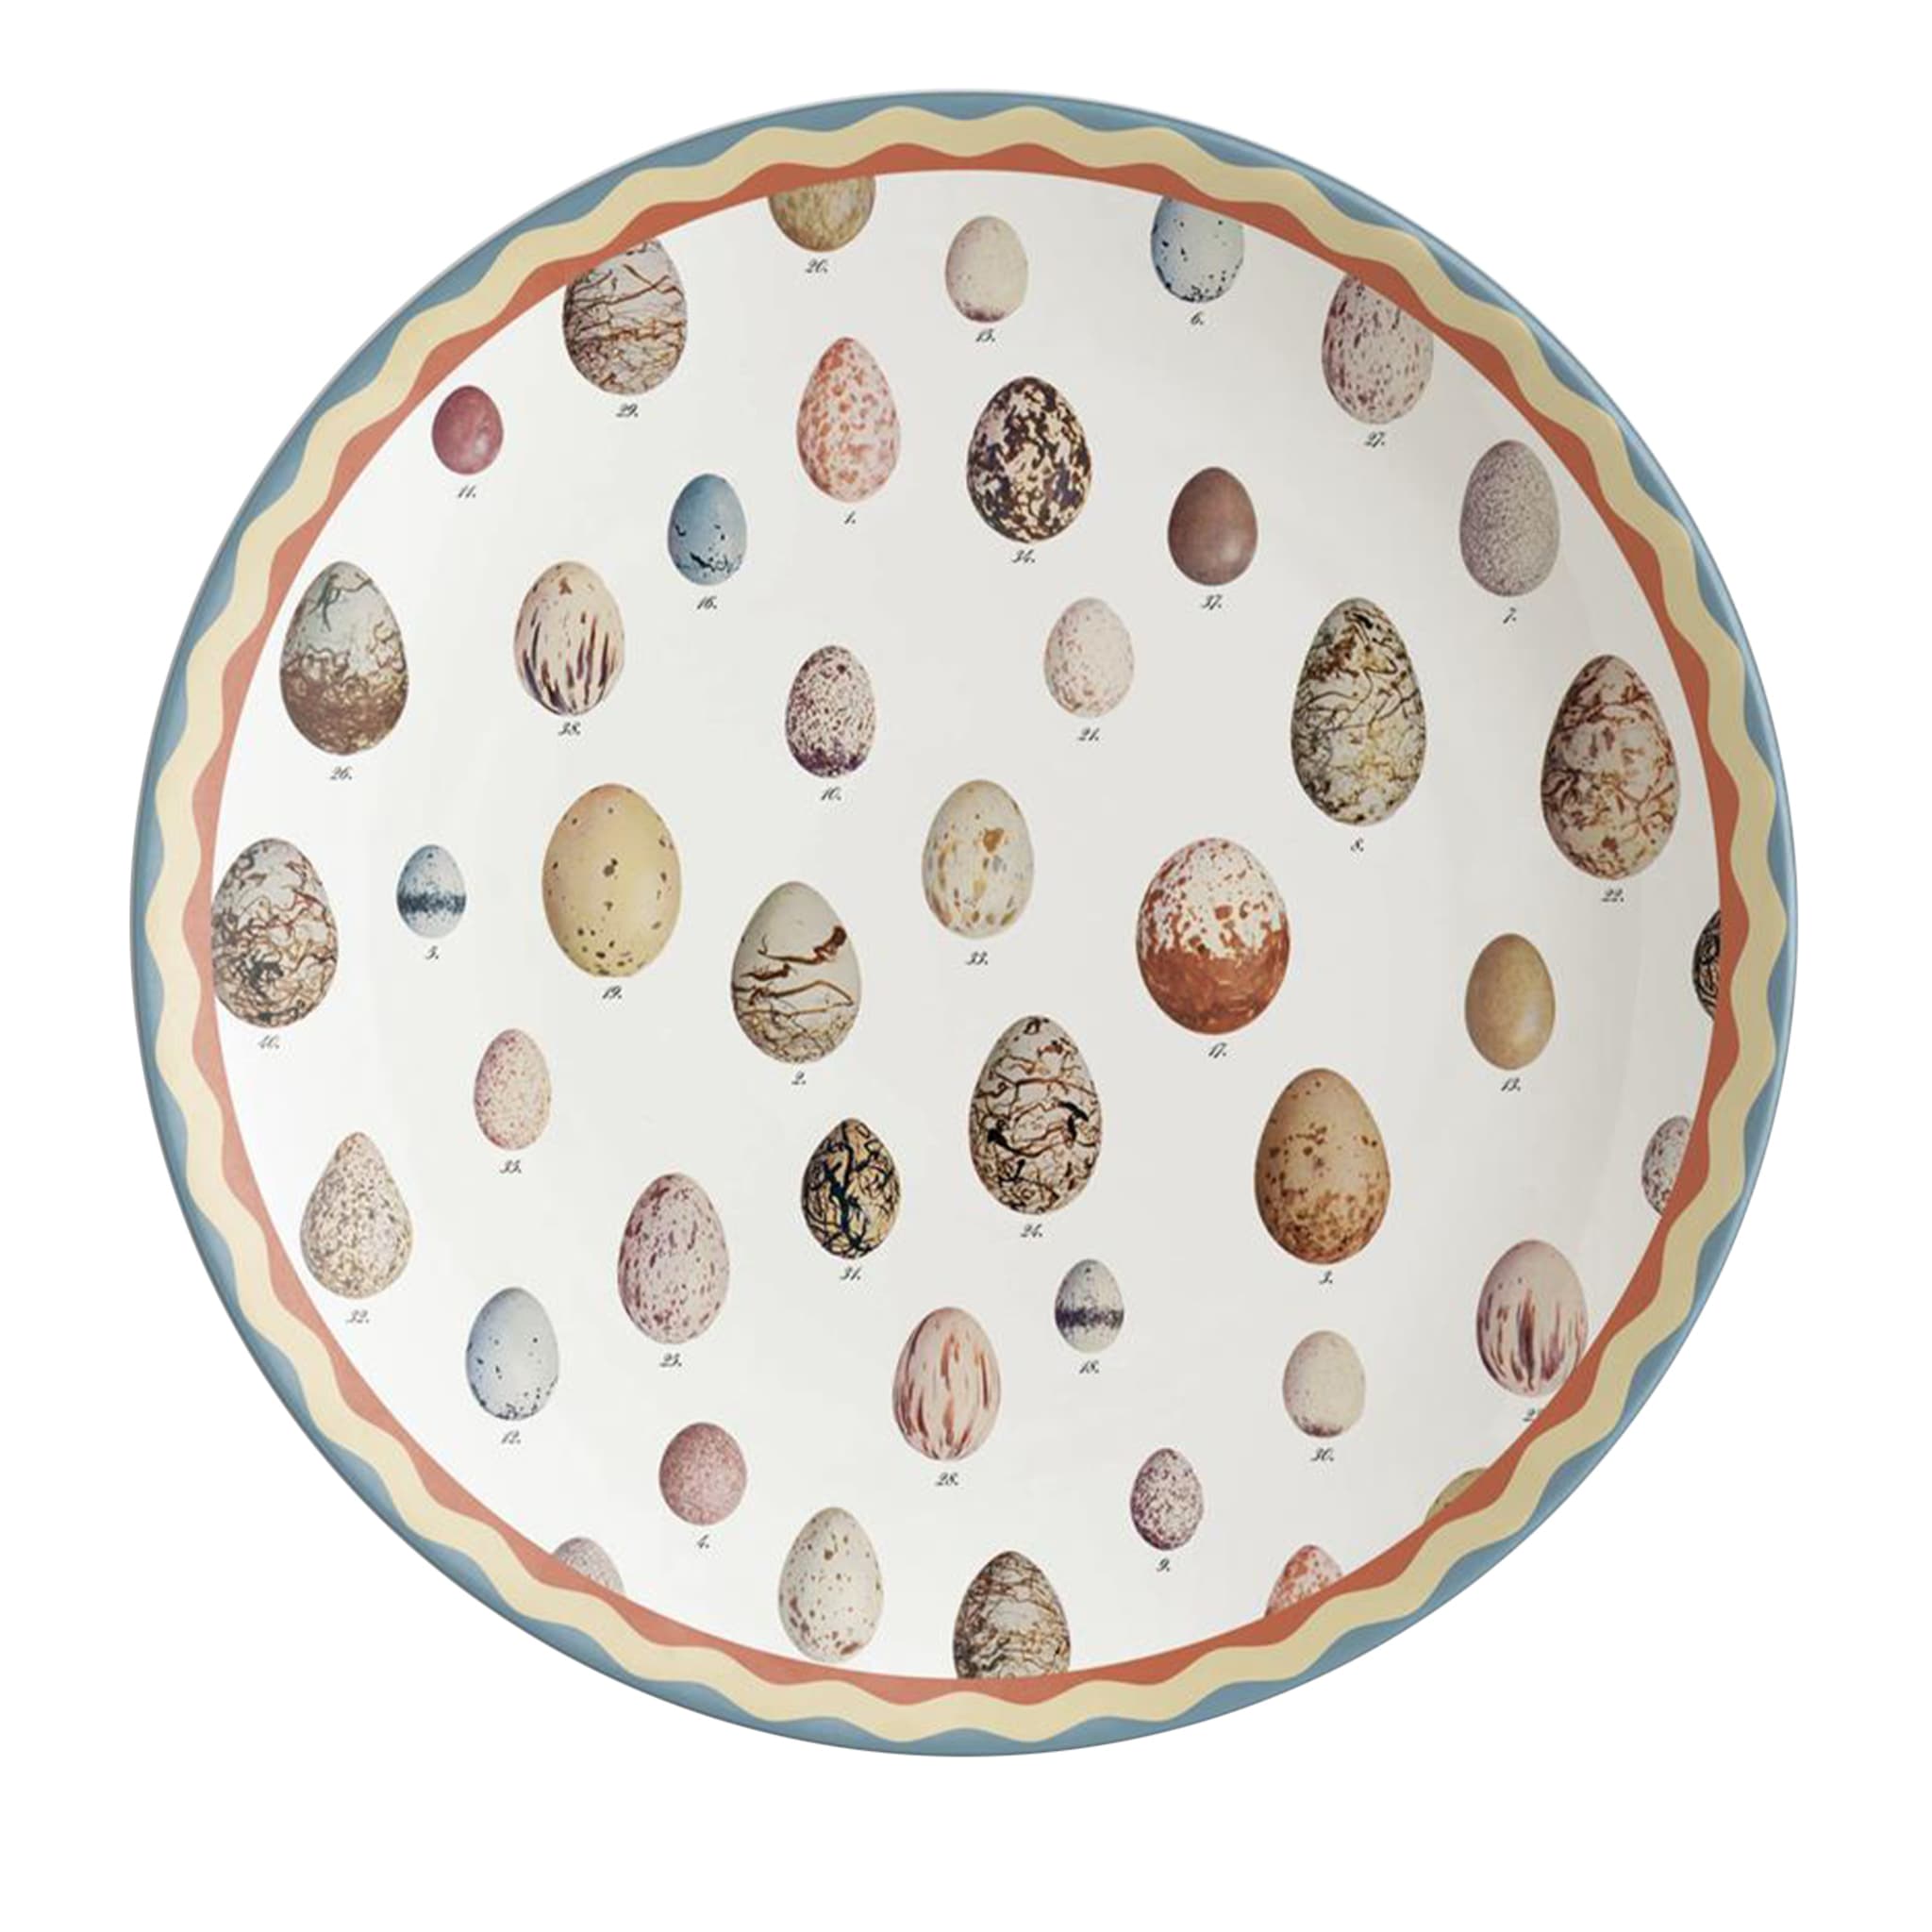 Cabinet De Curiosités Porcelain Charger Plate With Eggs - Main view